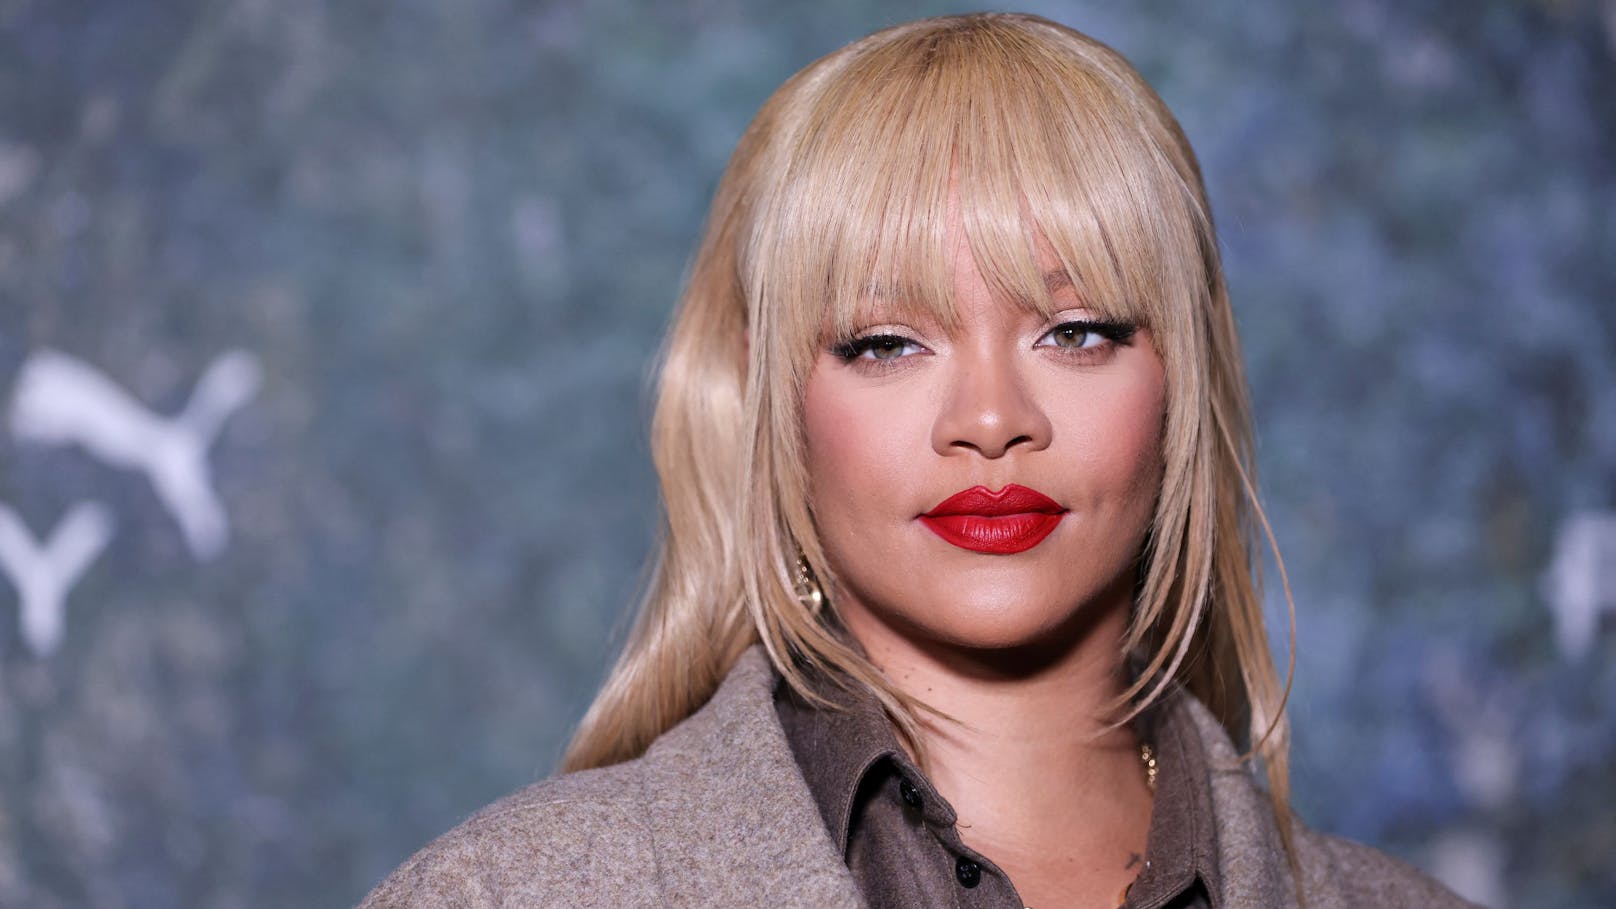 "Bin im Ruhestand": Nie mehr Musik von Rihanna?